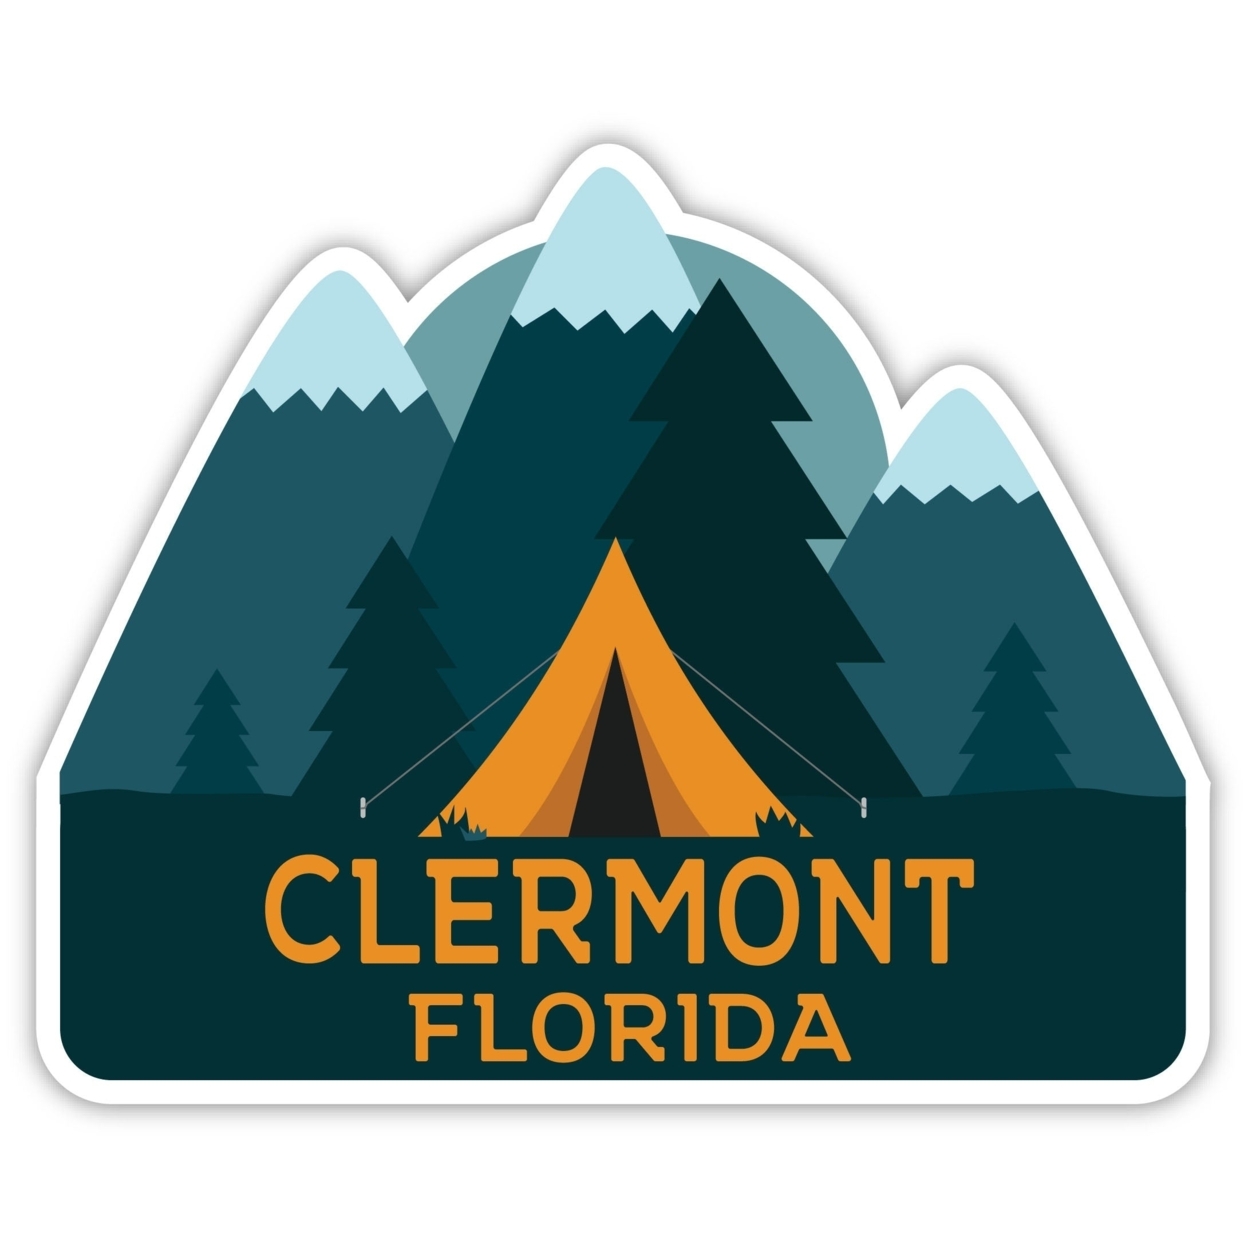 Clermont Florida Souvenir Decorative Stickers (Choose Theme And Size) - Single Unit, 2-Inch, Tent